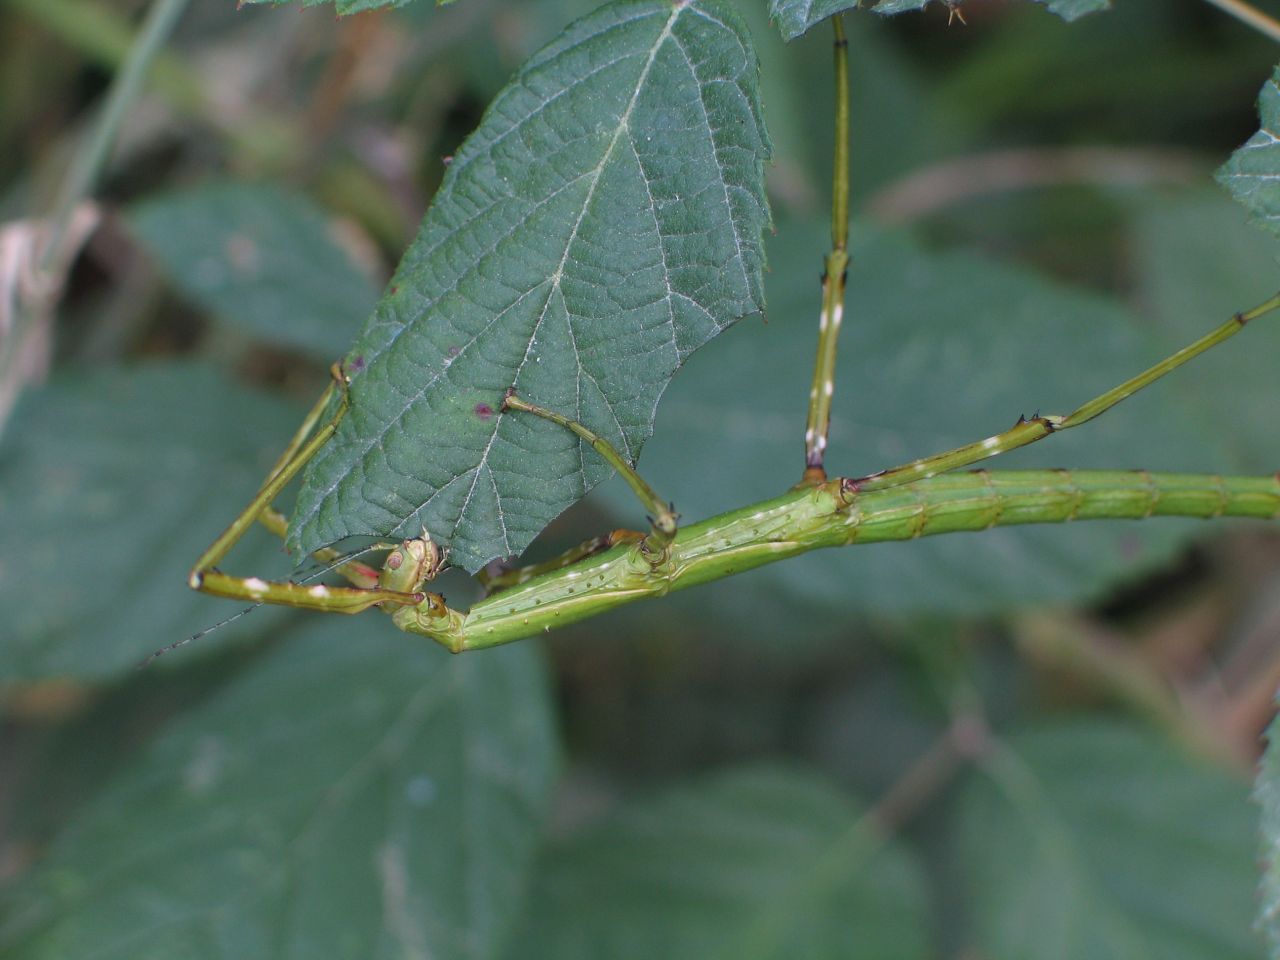 fotka / image hmyz u termalnich lazni ..., New Zealand